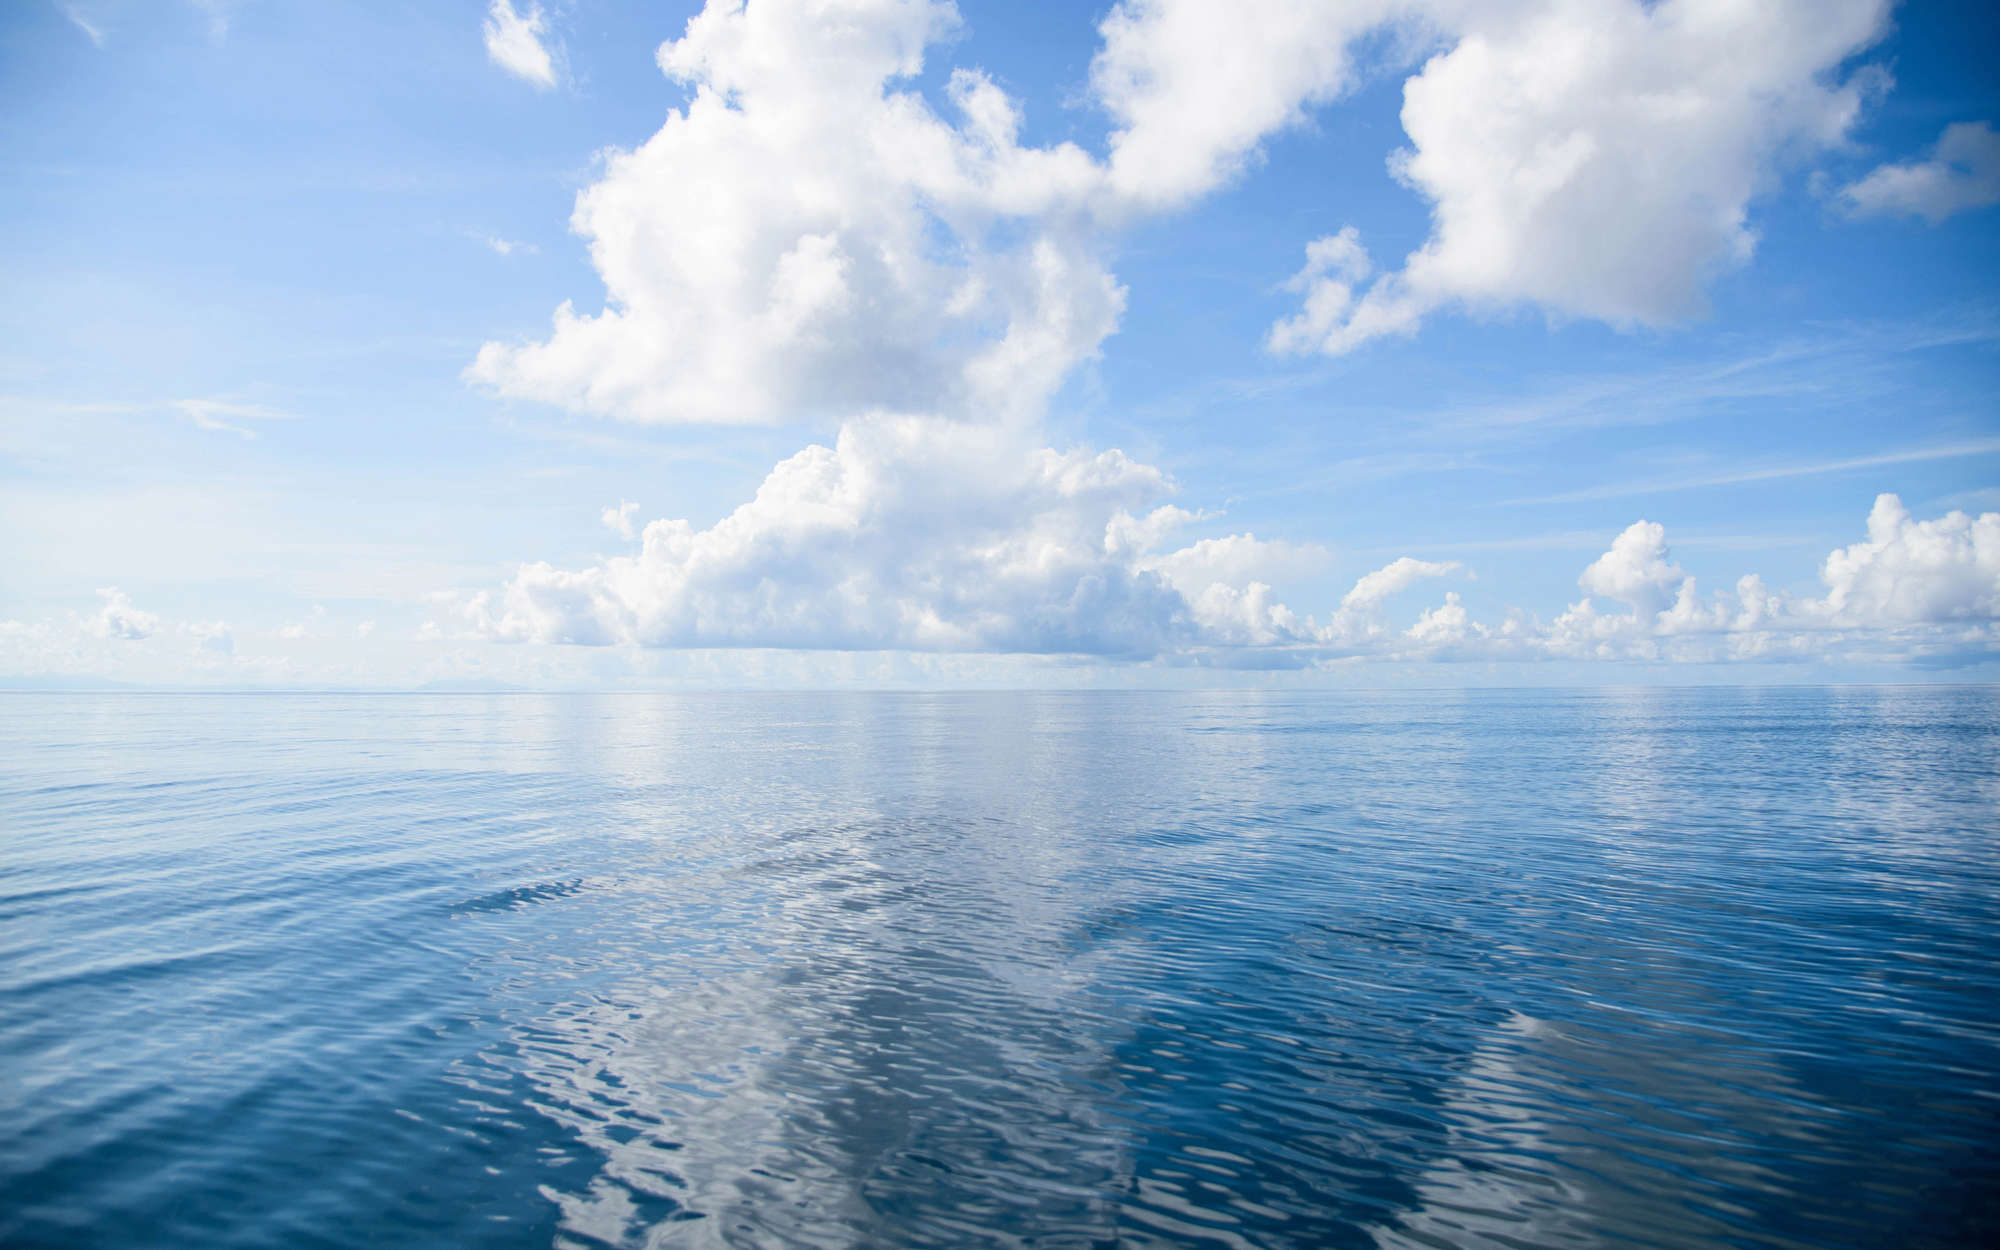             Digital behang open zee met wolken - parelmoer glad vlies
        